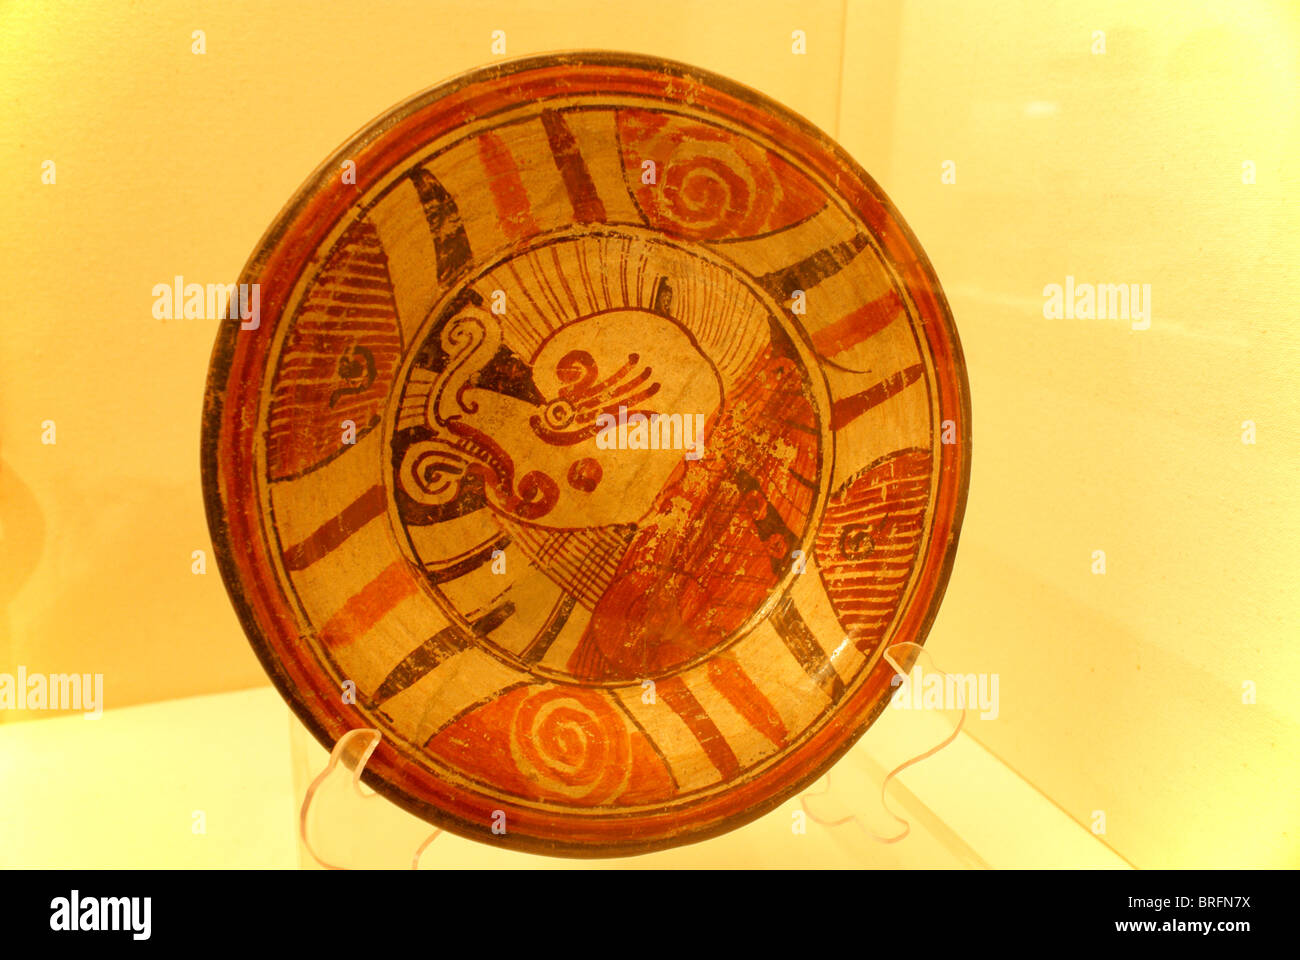 Placa cerámica prehispánica en el museo del sitio arqueológico de Cholula, Puebla, México. Foto de stock